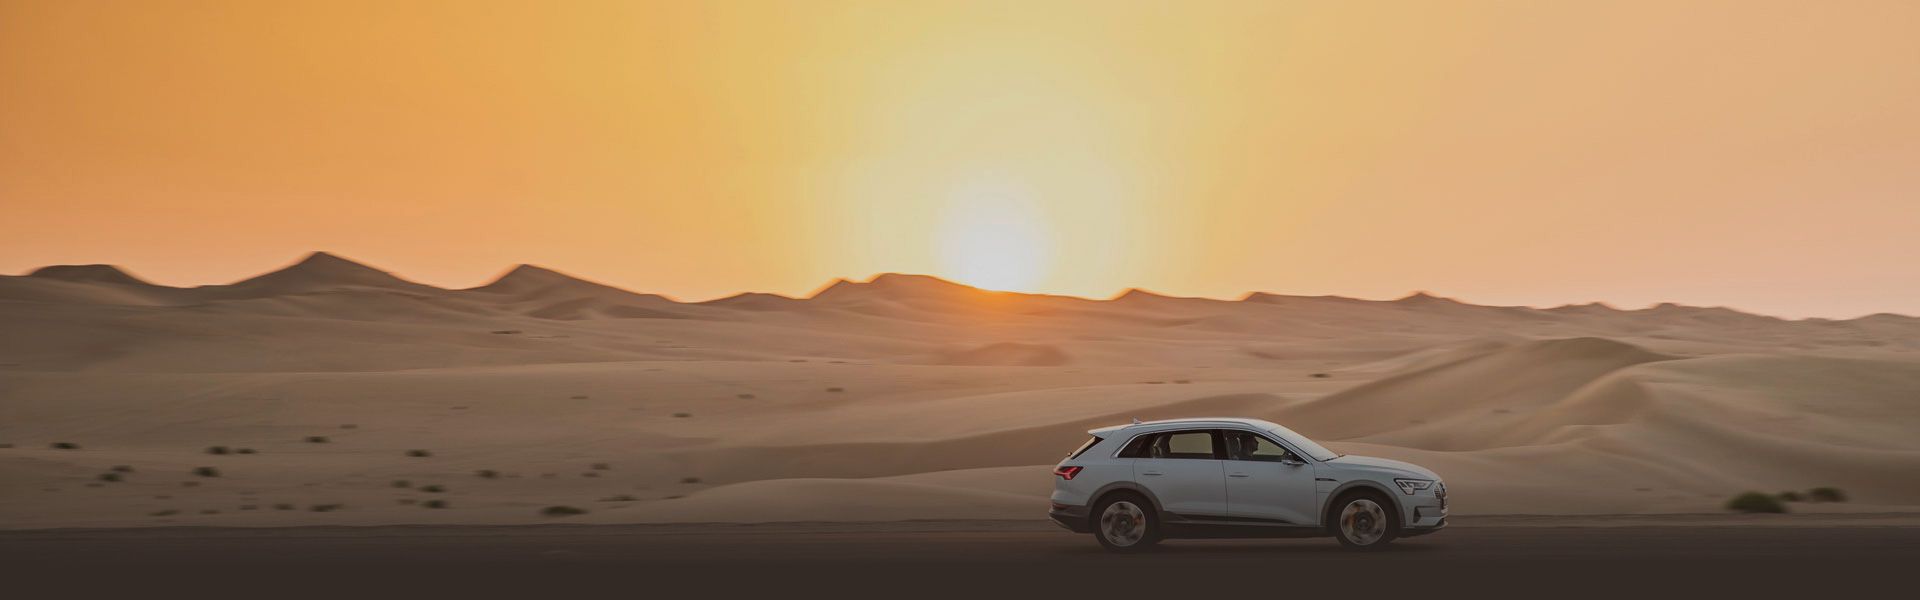 Audi fährt in einer Wüste bei Sonnenuntergang